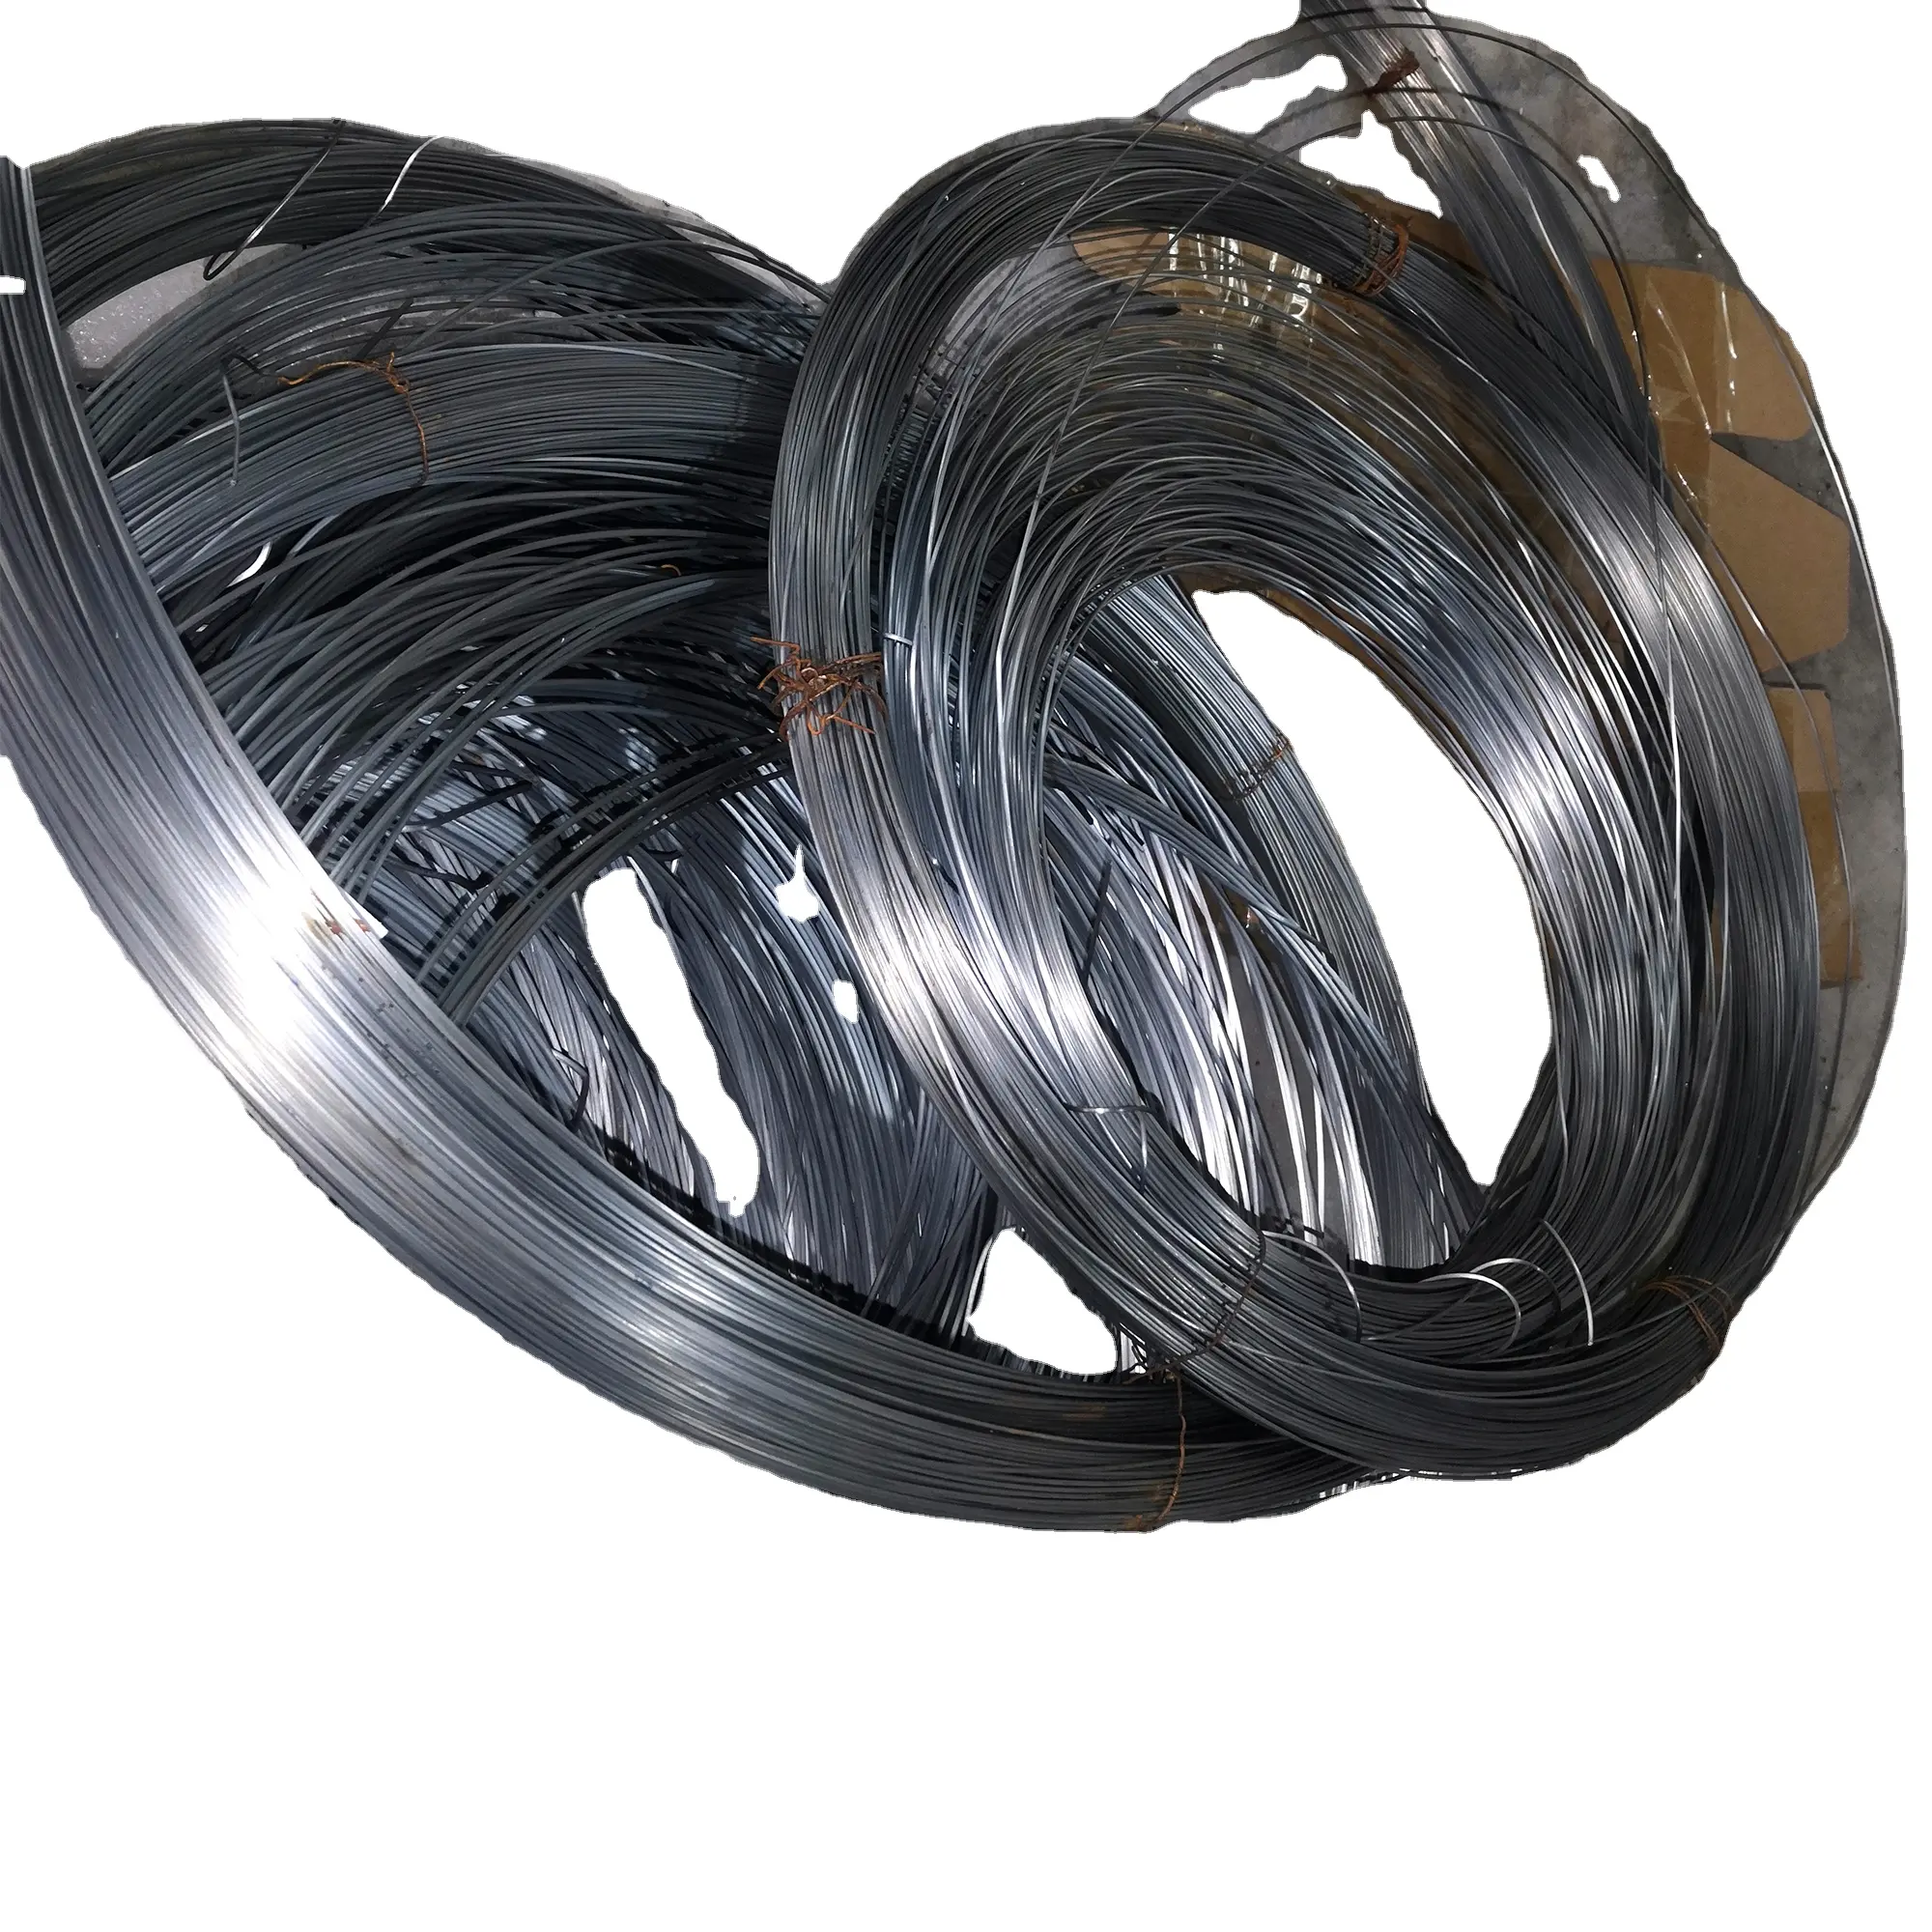 Tungsten tel fiyat wolfram tel tungsten ürünleri olarak çeşitli boyut